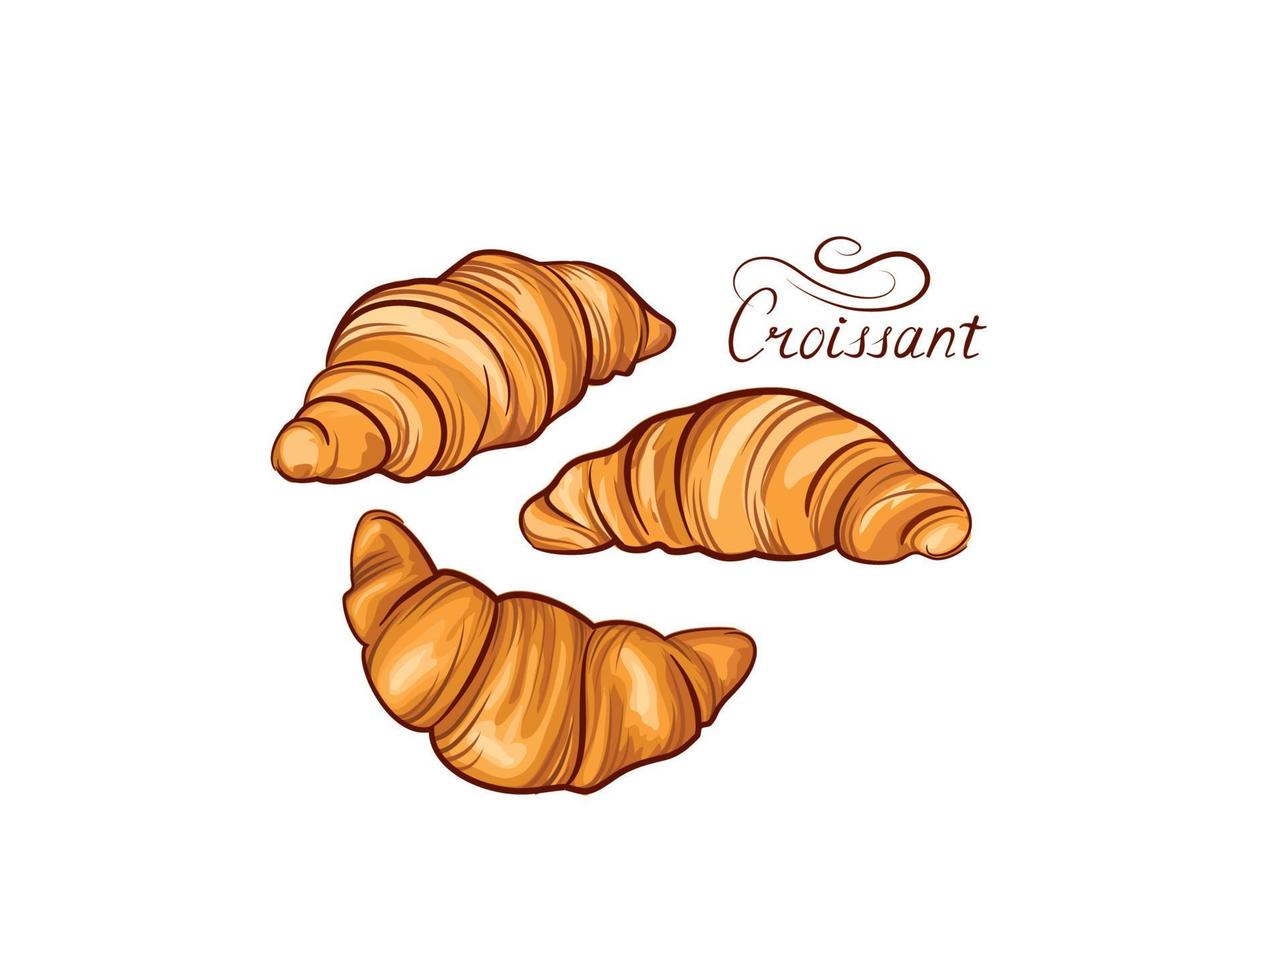 croissant fransk mat Ikonuppsättning. bageri mat hand ritning linjekonst över vit bakgrund. tårta till frukost banner vektor